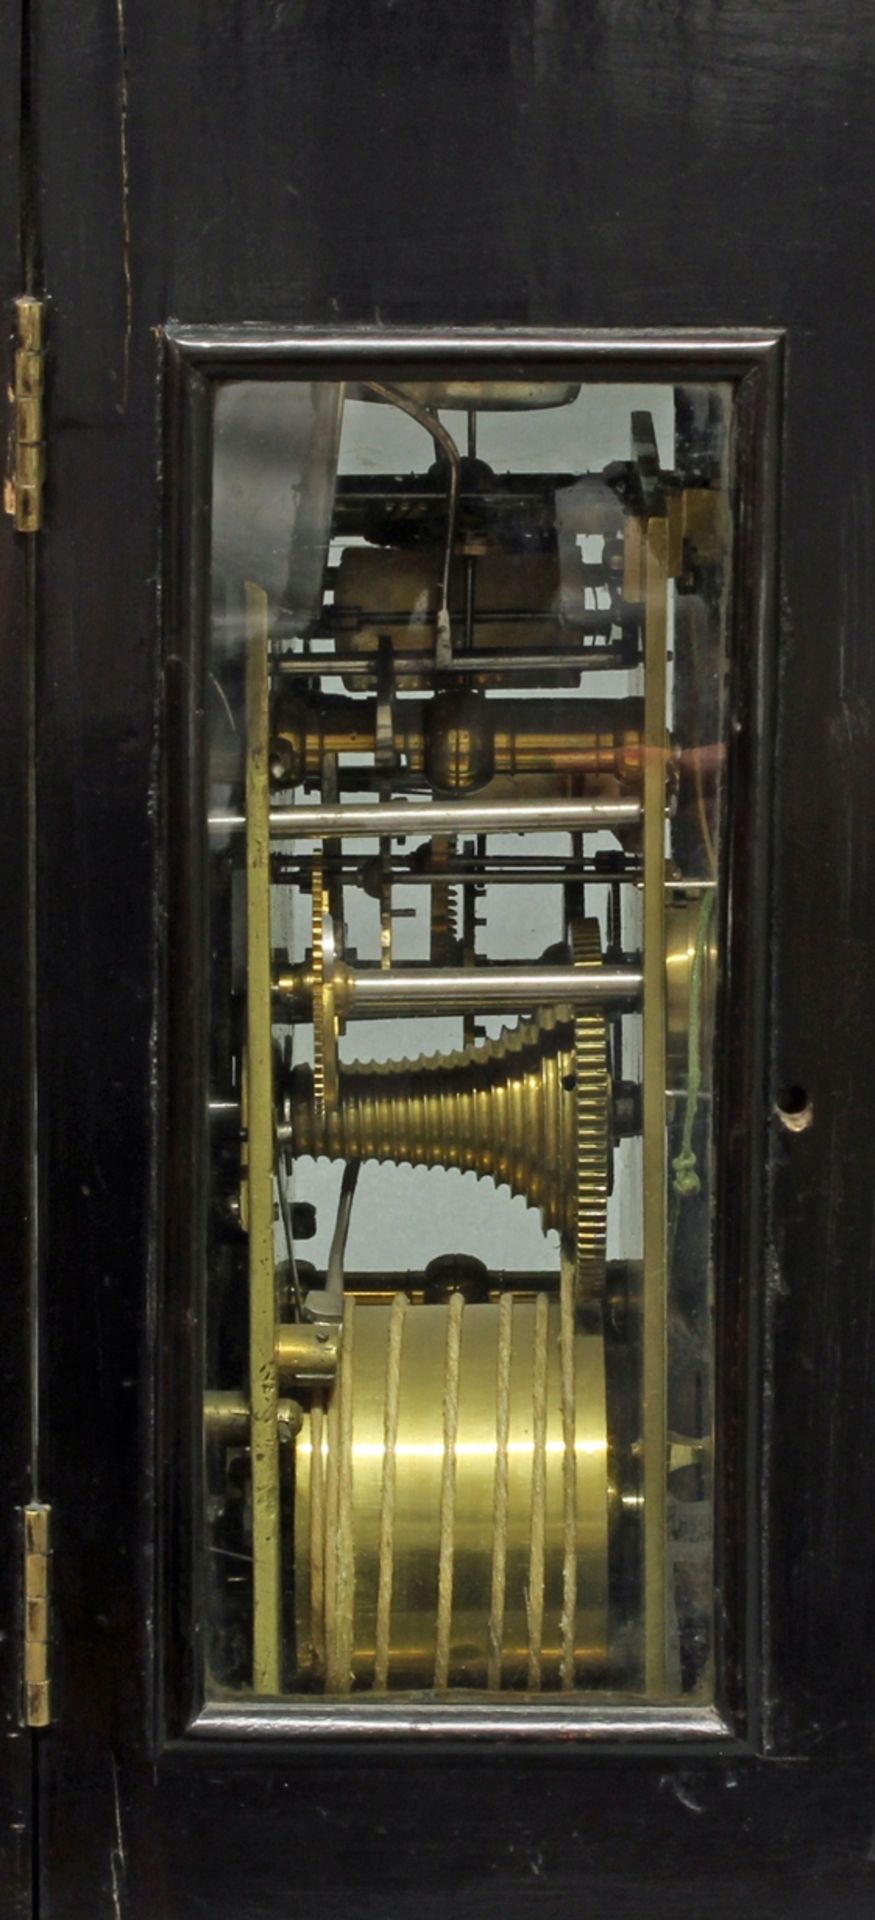 Bracket Clock, England, Mitte 18. Jh., Plakette im Bogenfeld und Werk, signiert Dav.Compigne, Winto - Image 3 of 4